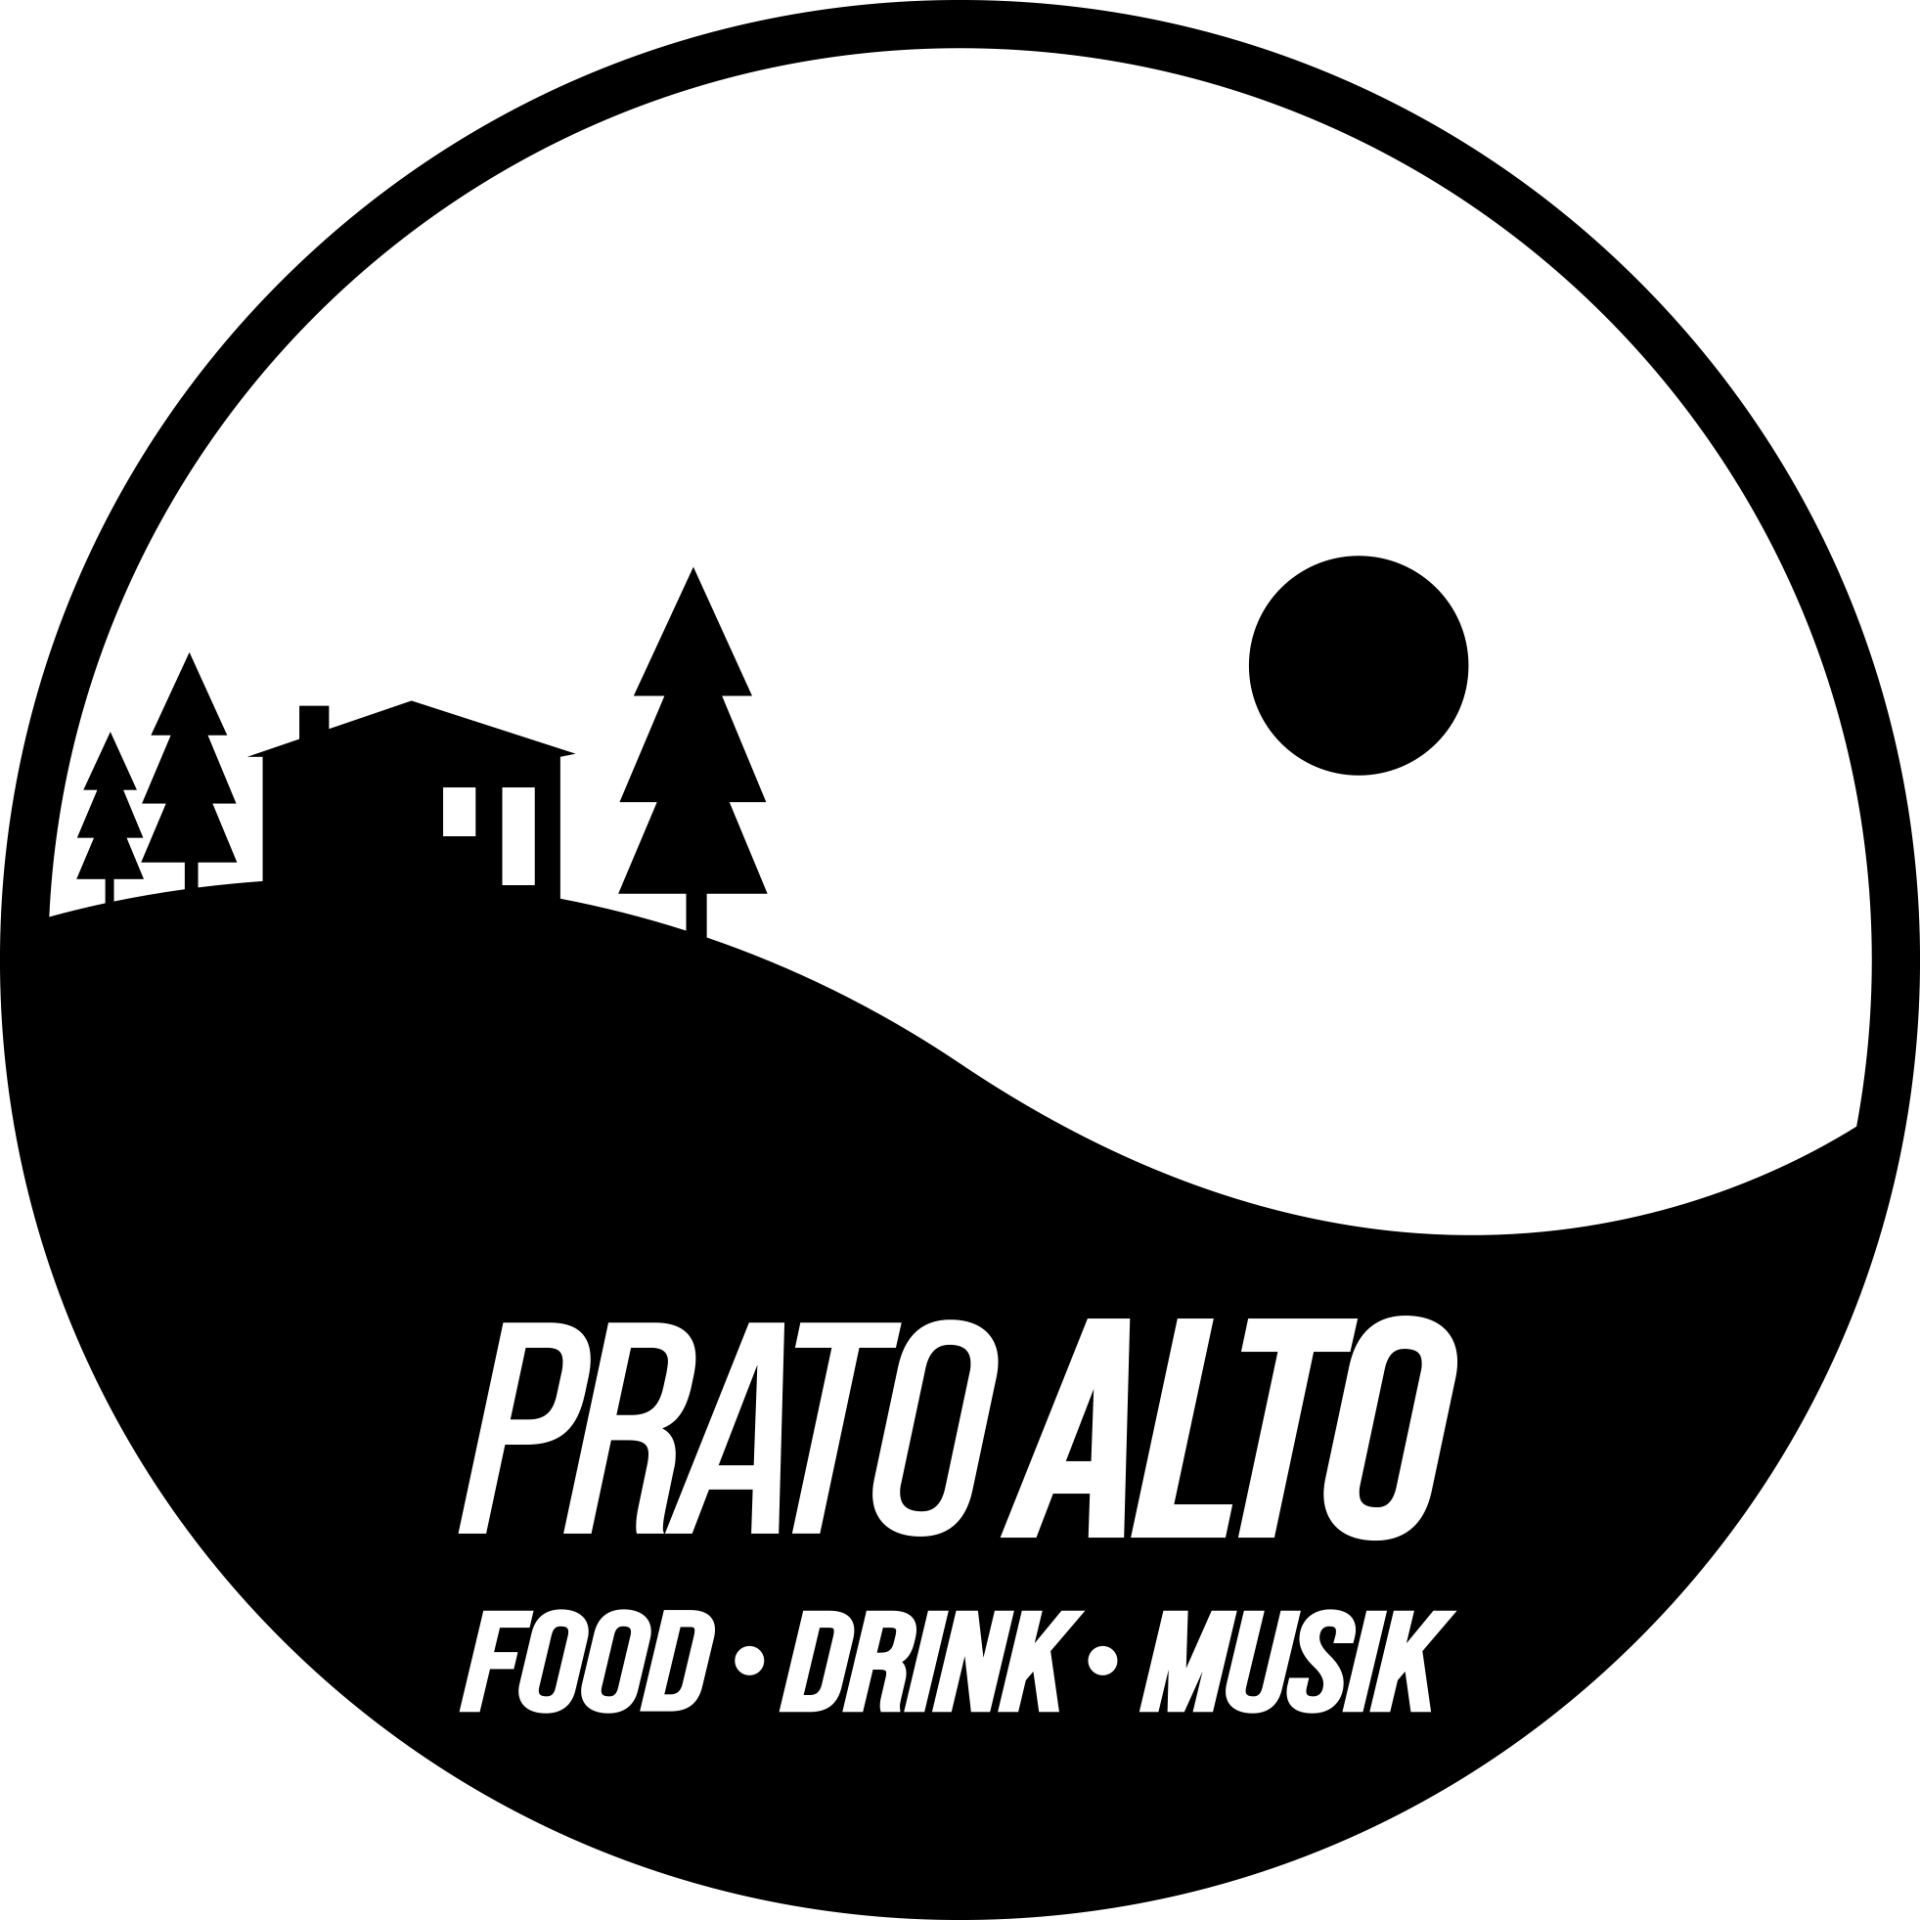 PRATO ALTO  FOOD DRINK MUSIK - LOGO